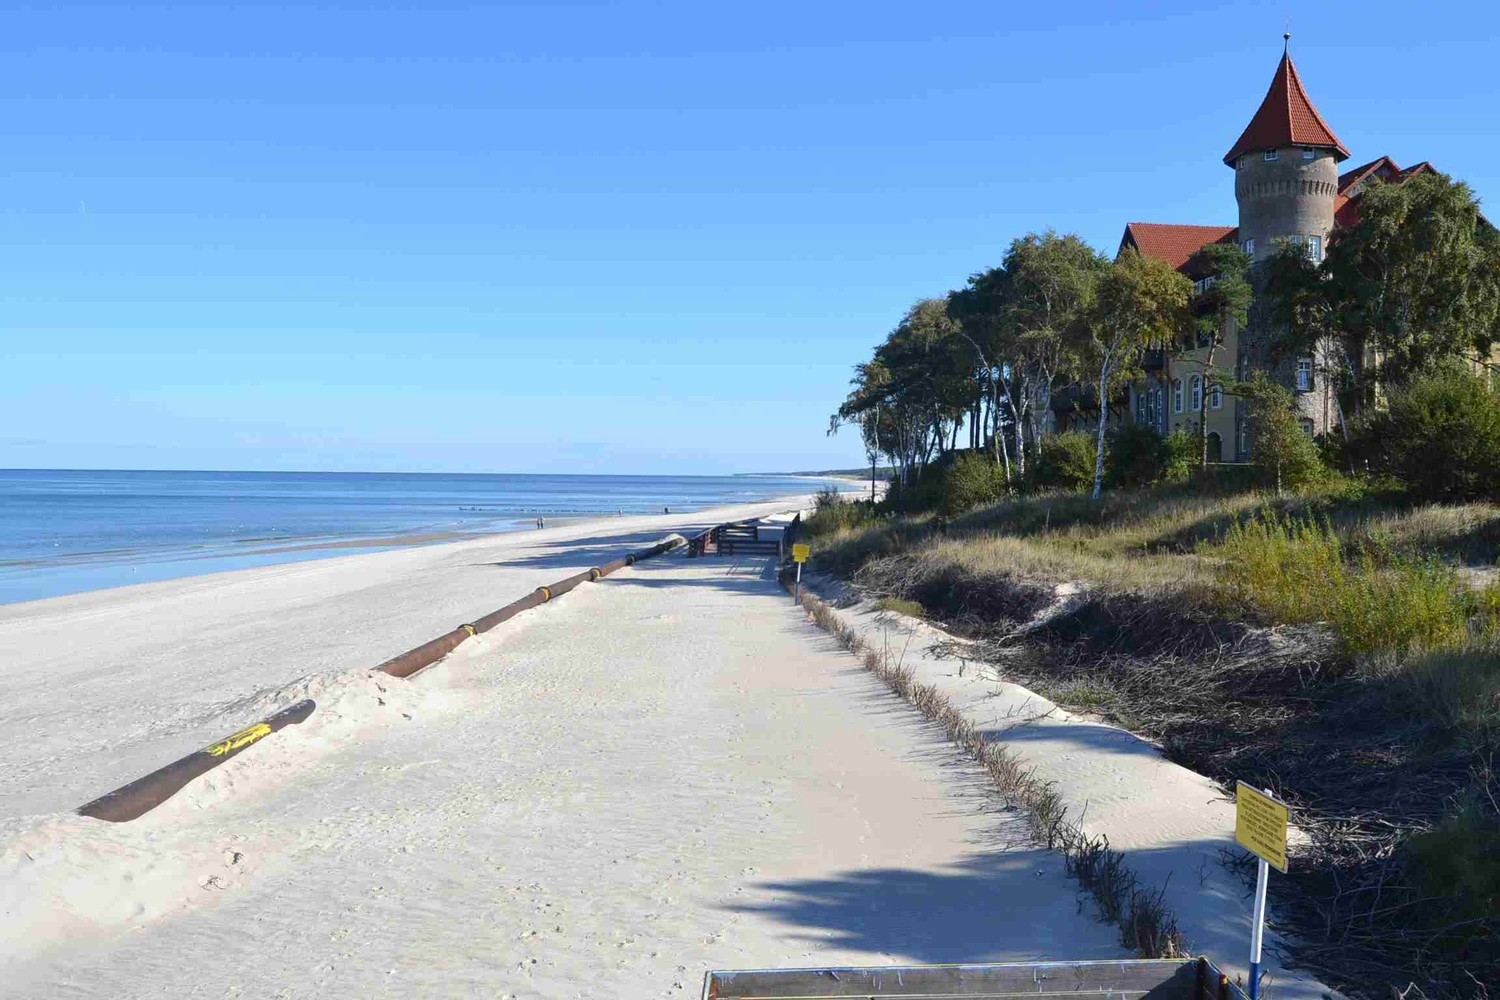 Балтийские курорты польши; незабываемый пляжный отдых возле моря - документы и юриспруденция